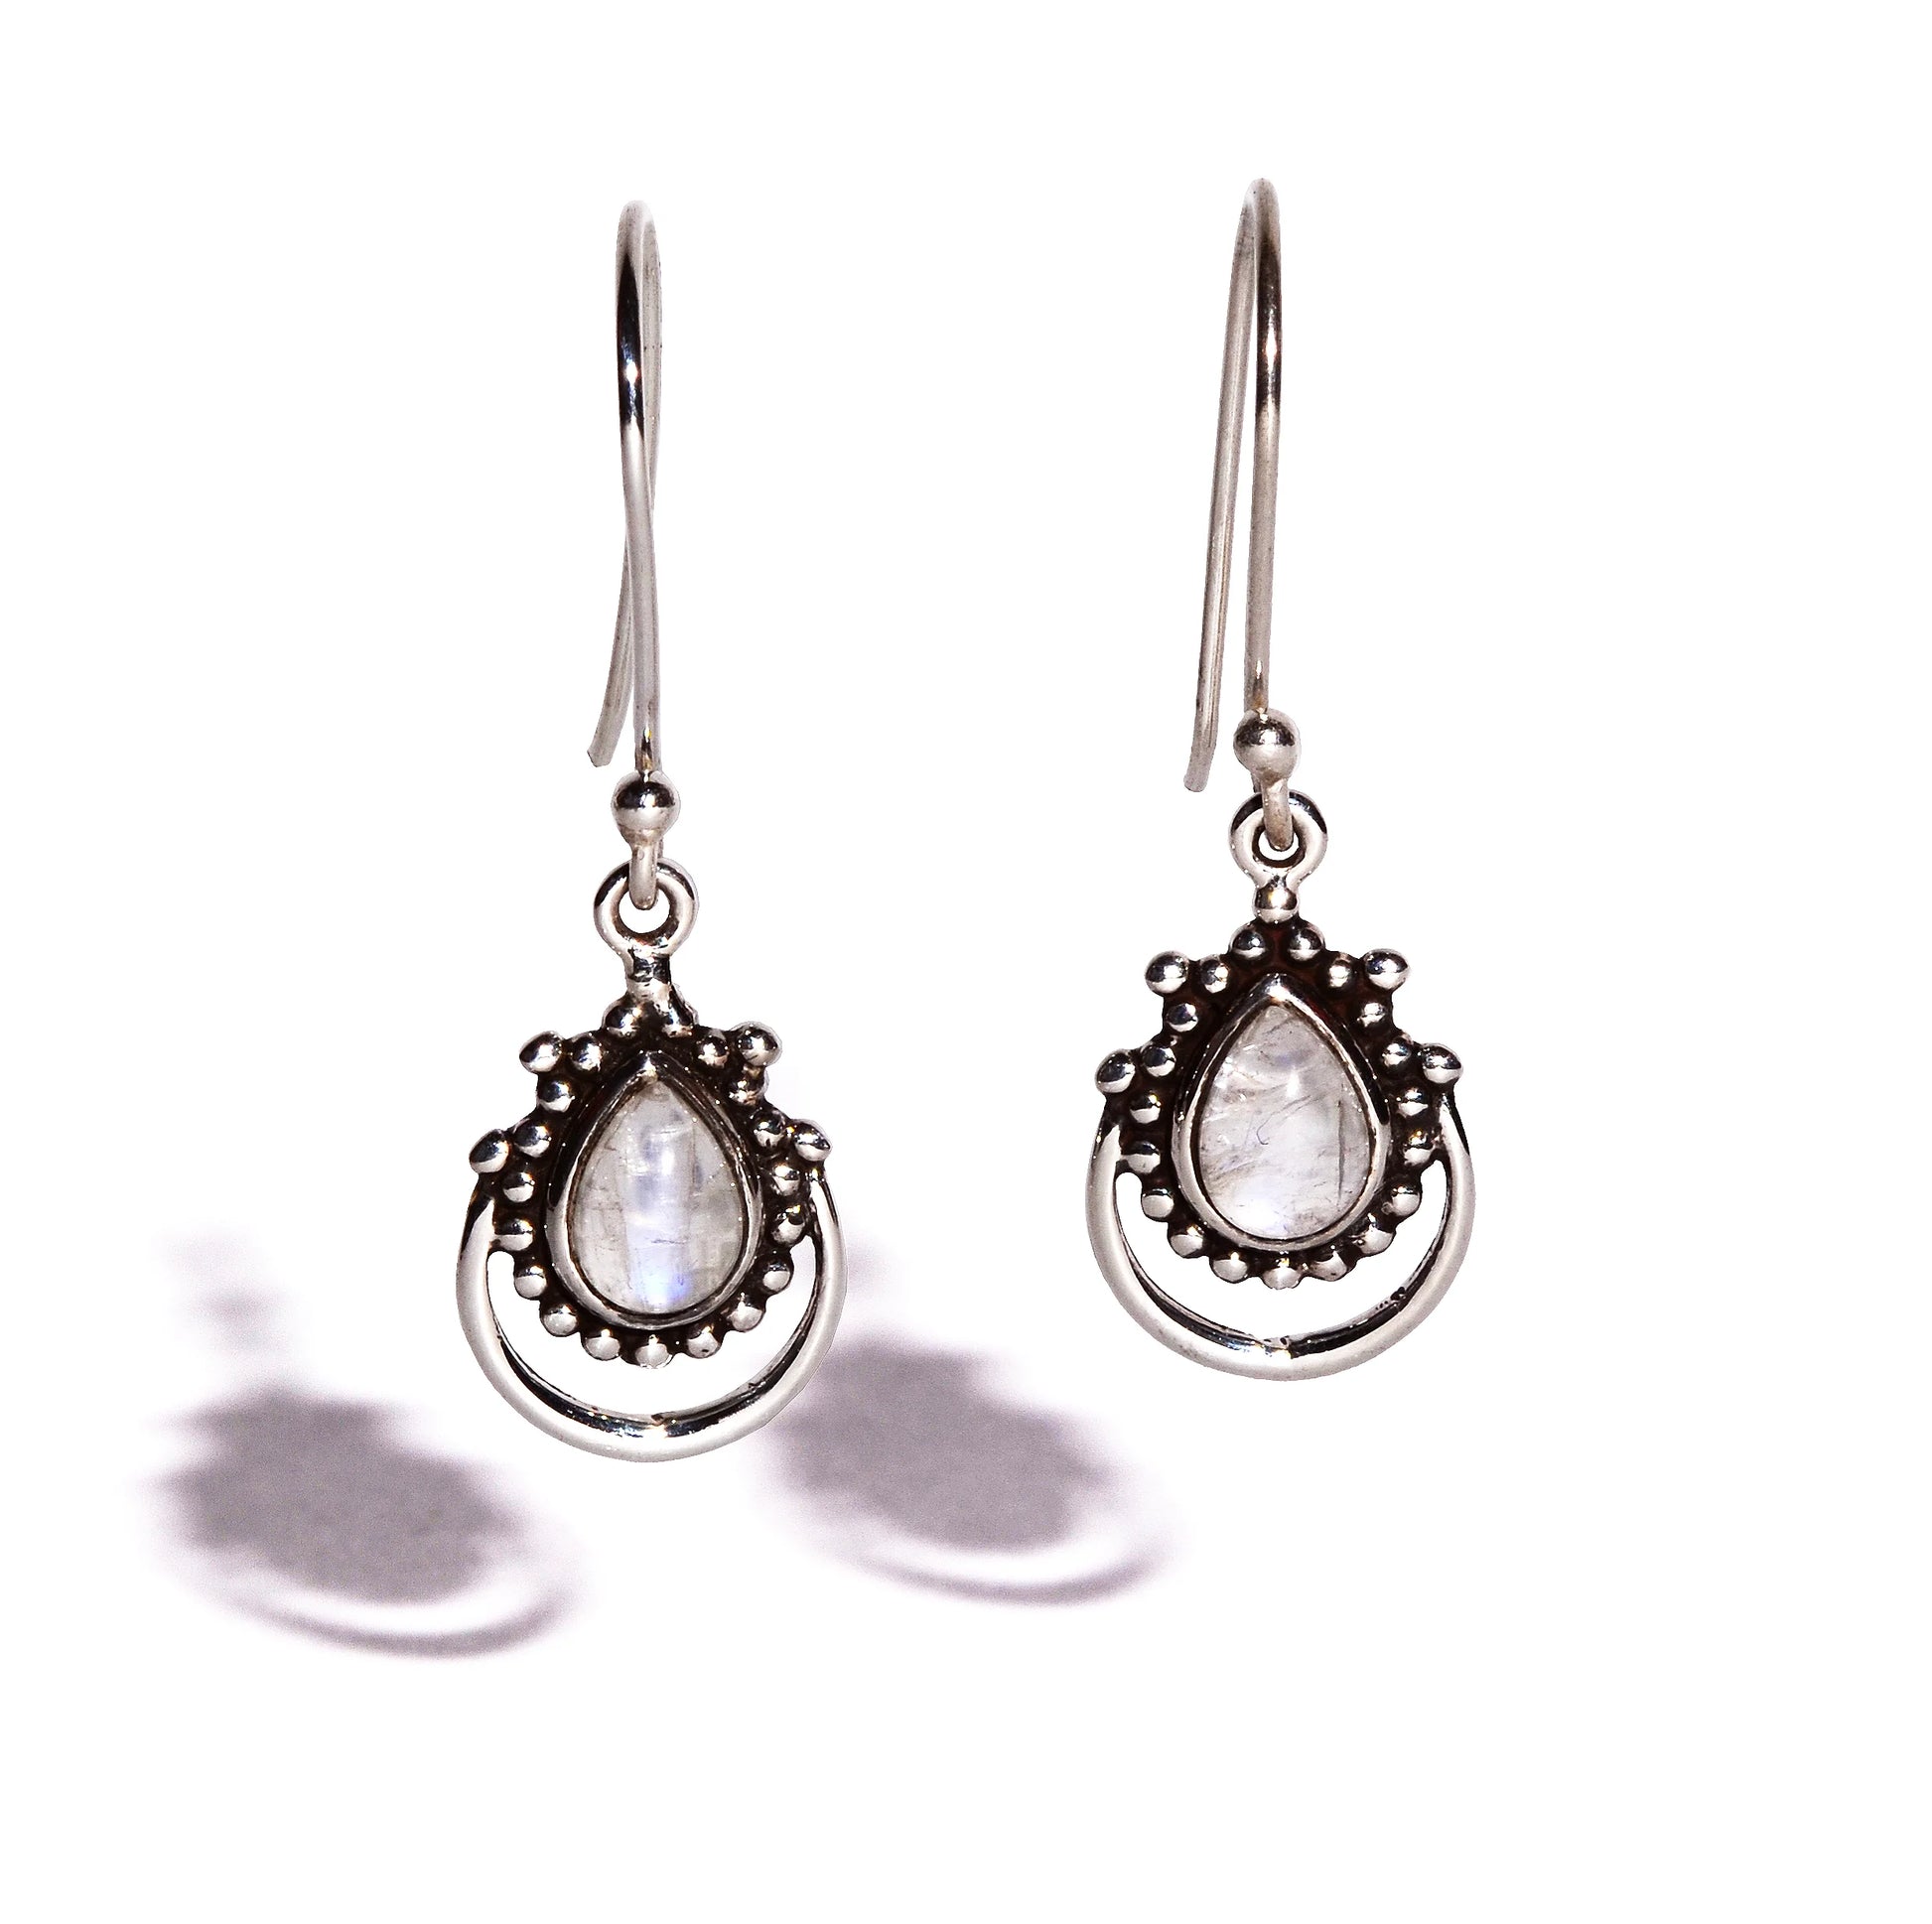 Rainbow Moonstone Sterling Silver Earrings - Teardrop Crystals